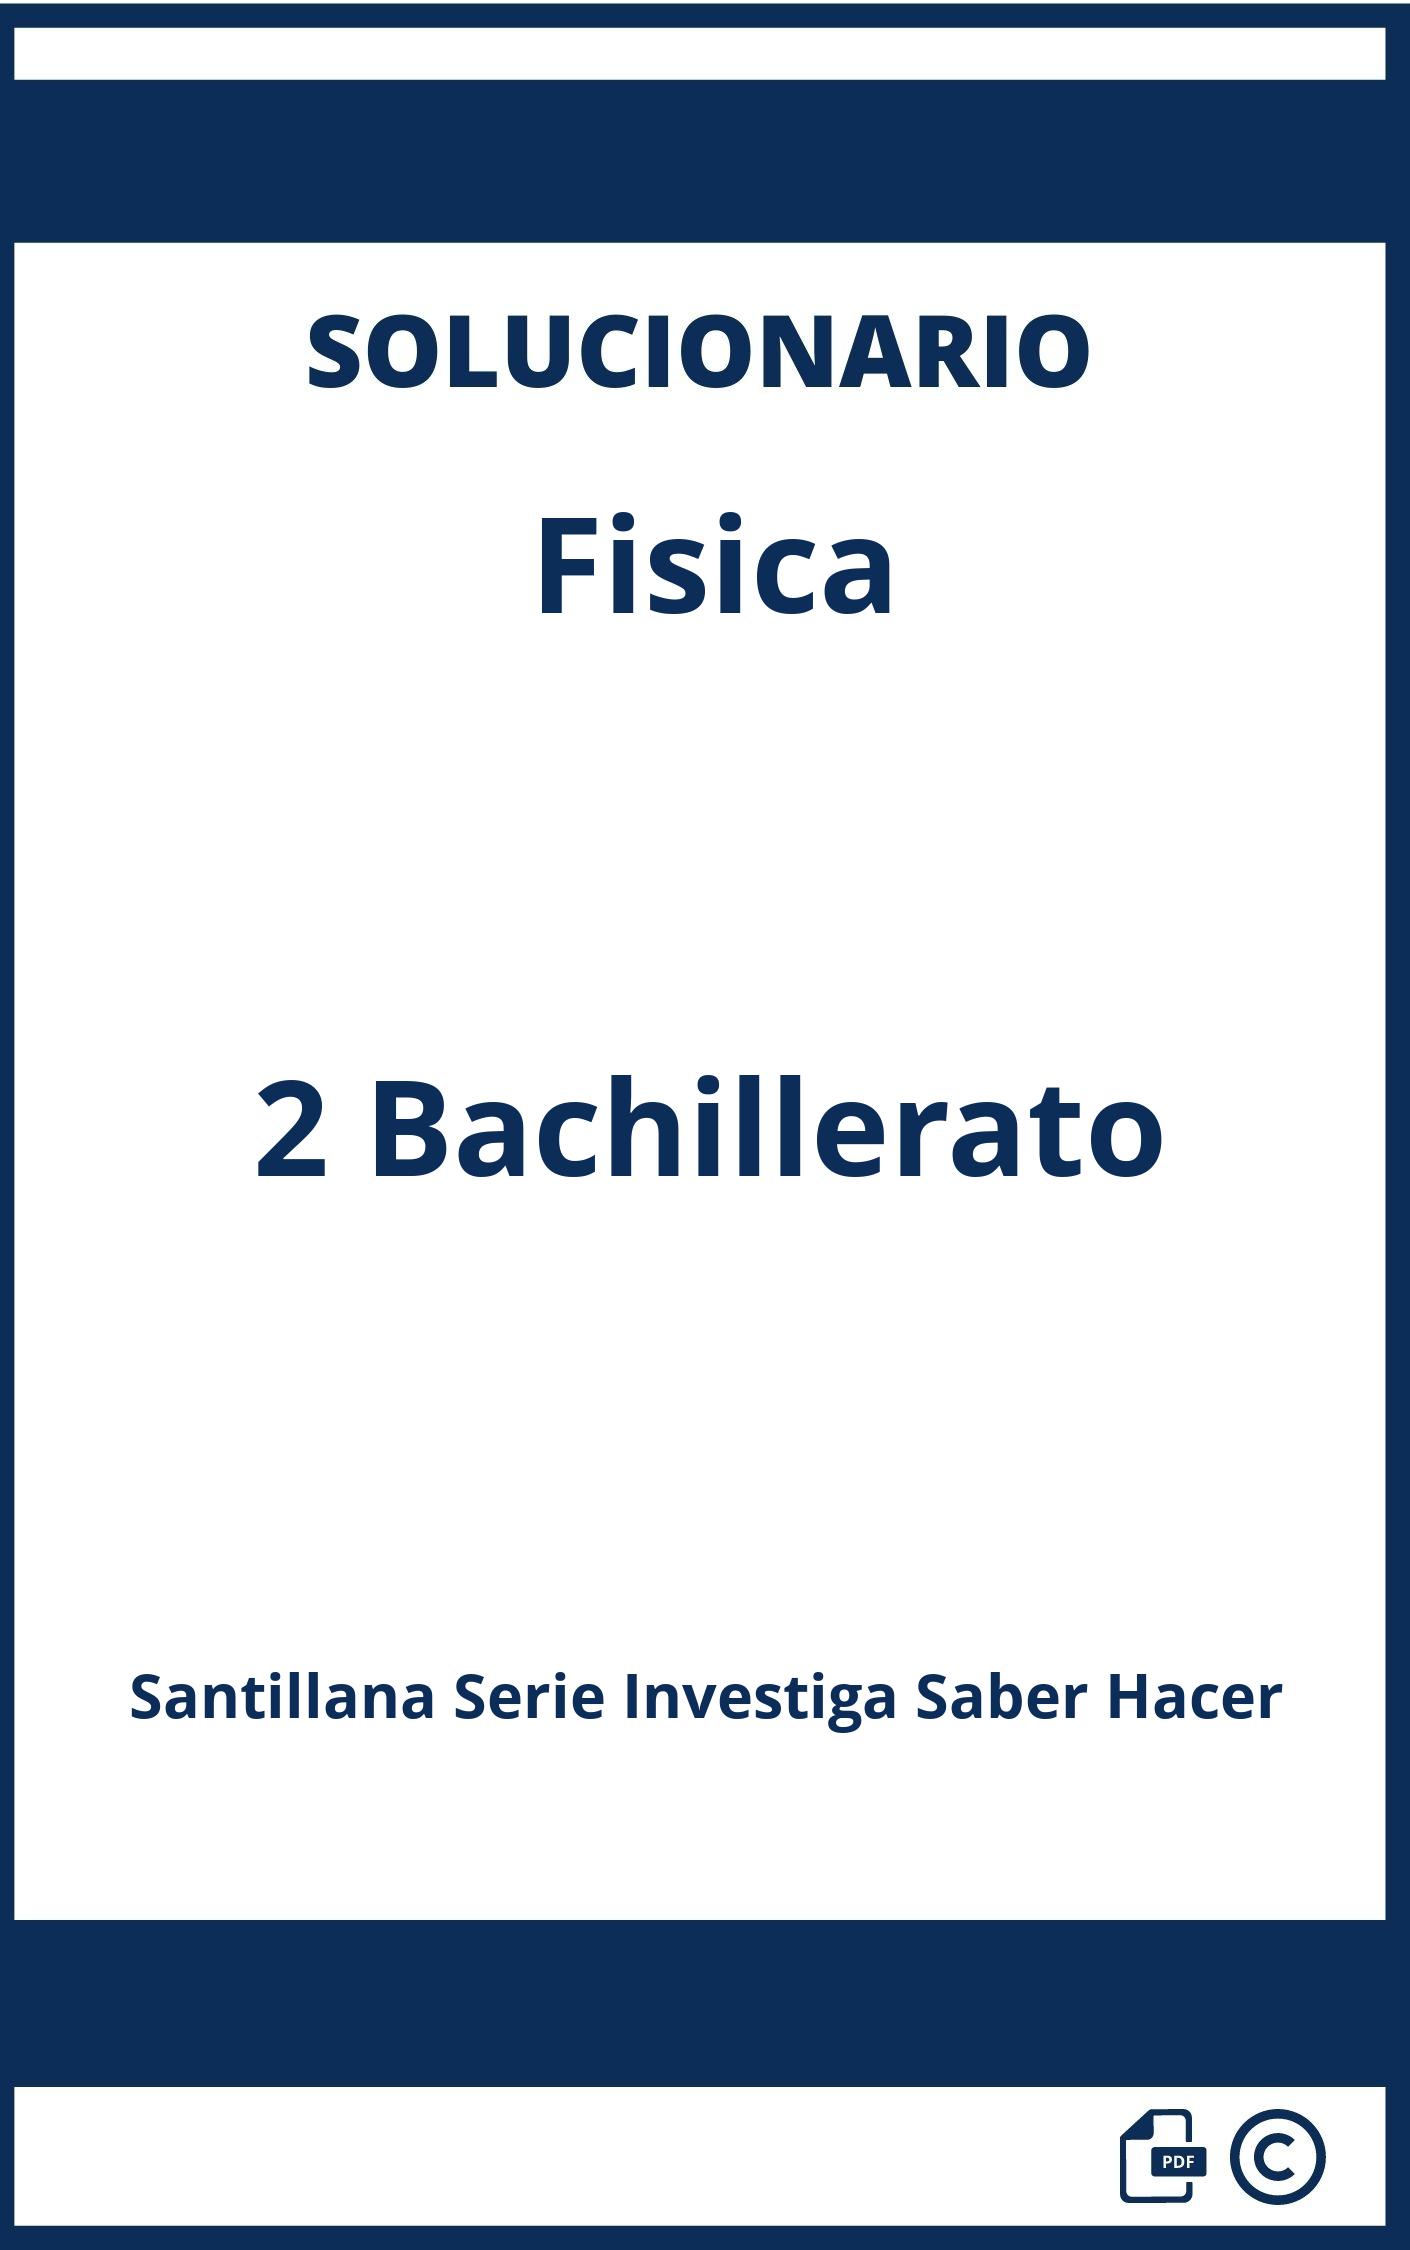 Solucionario Fisica 2 Bachillerato Santillana Serie Investiga Saber Hacer